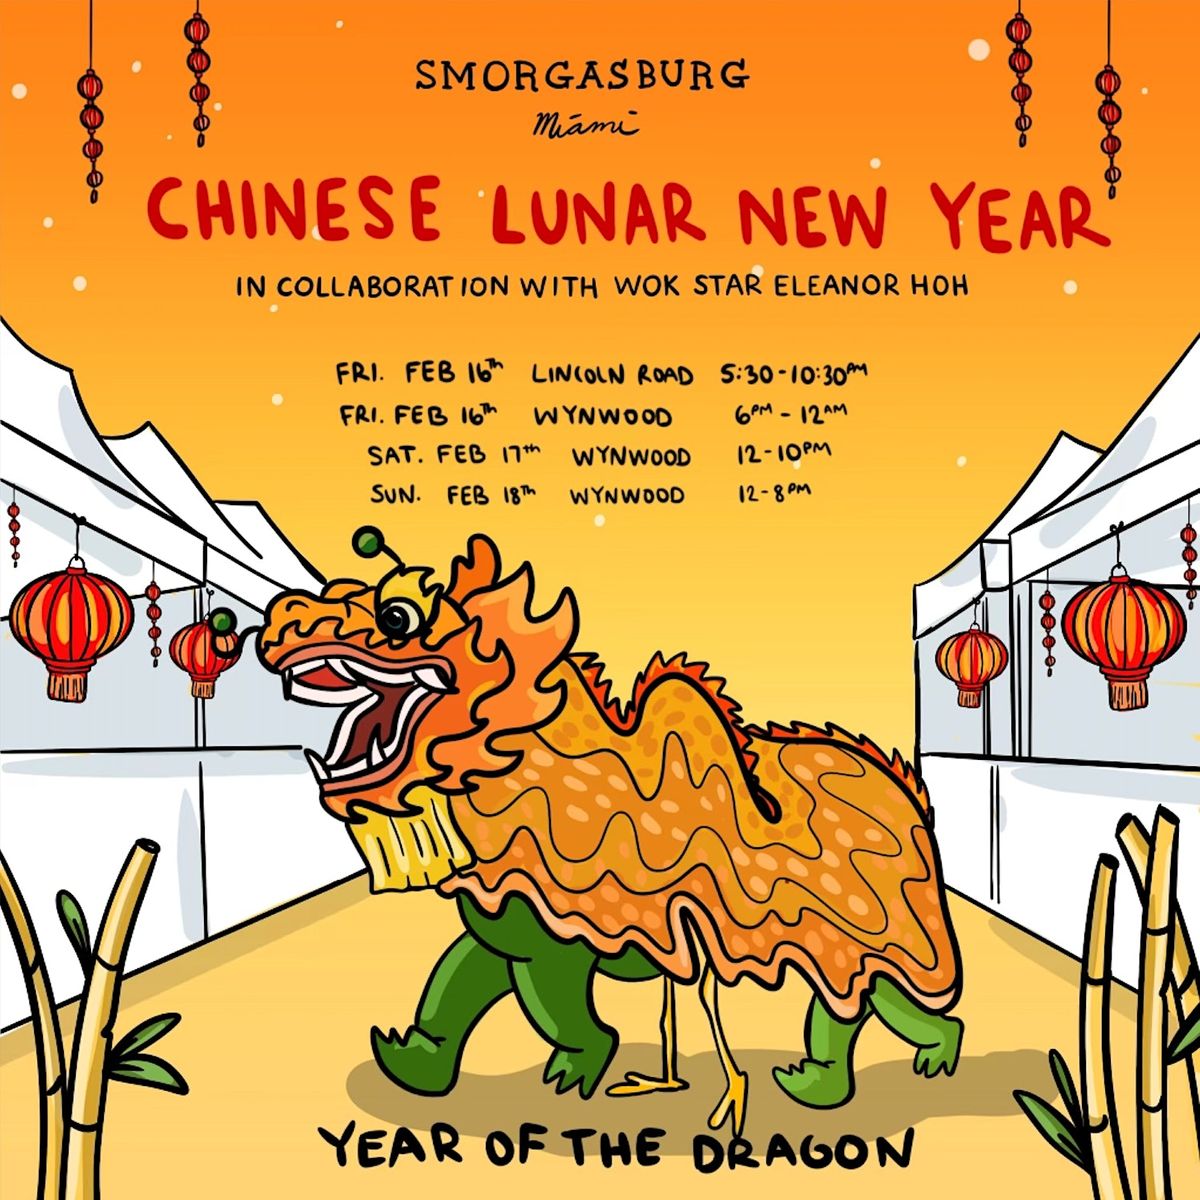 Chinese Lunar New Year at Smorgasburg Miami